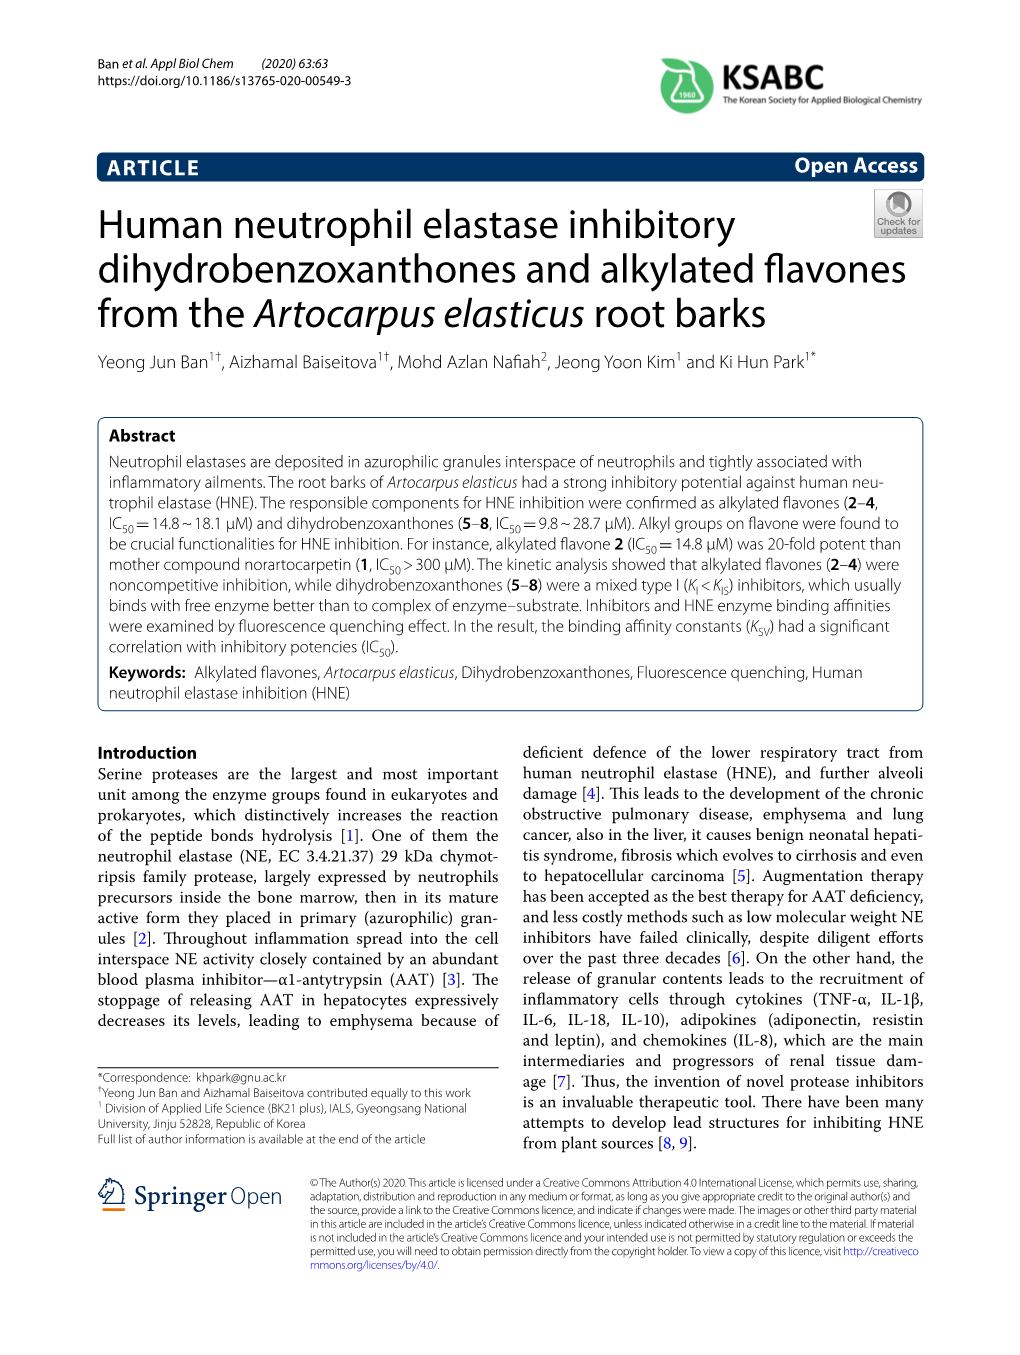 Human Neutrophil Elastase Inhibitory Dihydrobenzoxanthones And